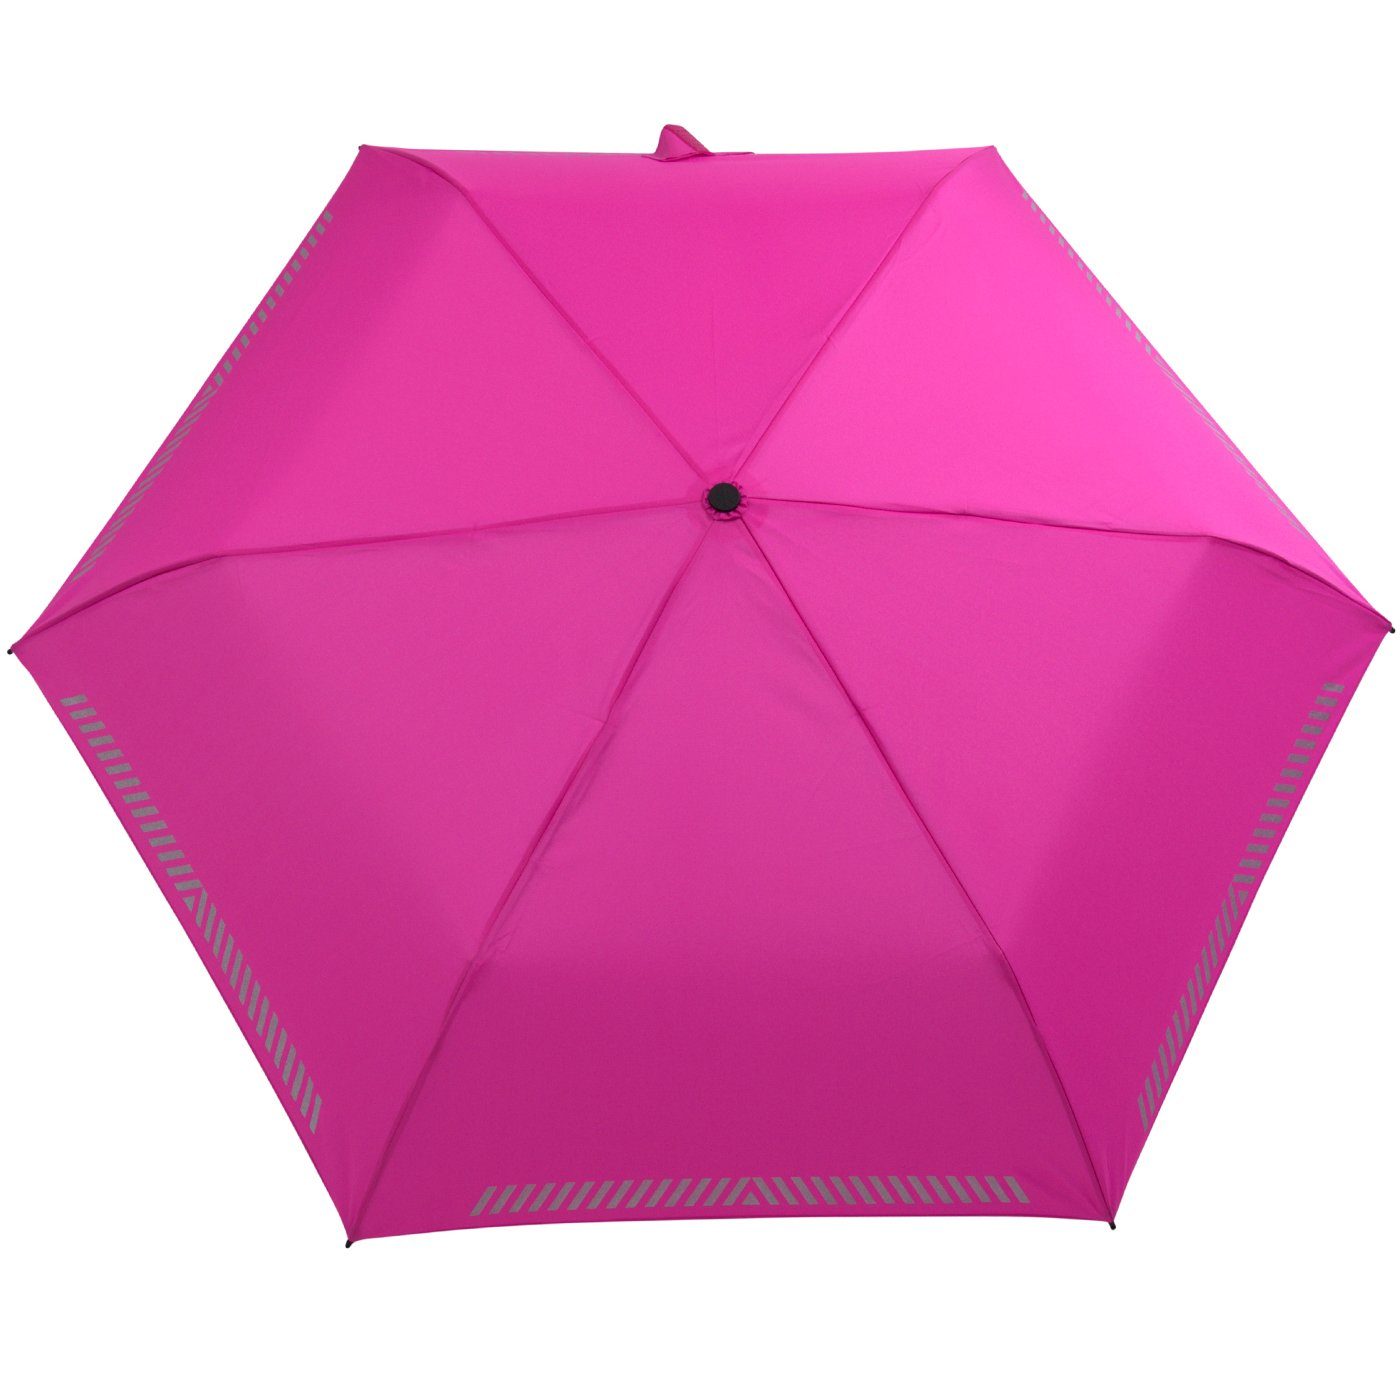 iX-brella Taschenregenschirm Kinderschirm pink Reflex-Streifen - Auf-Zu-Automatik, neon mit reflektierend, durch Sicherheit